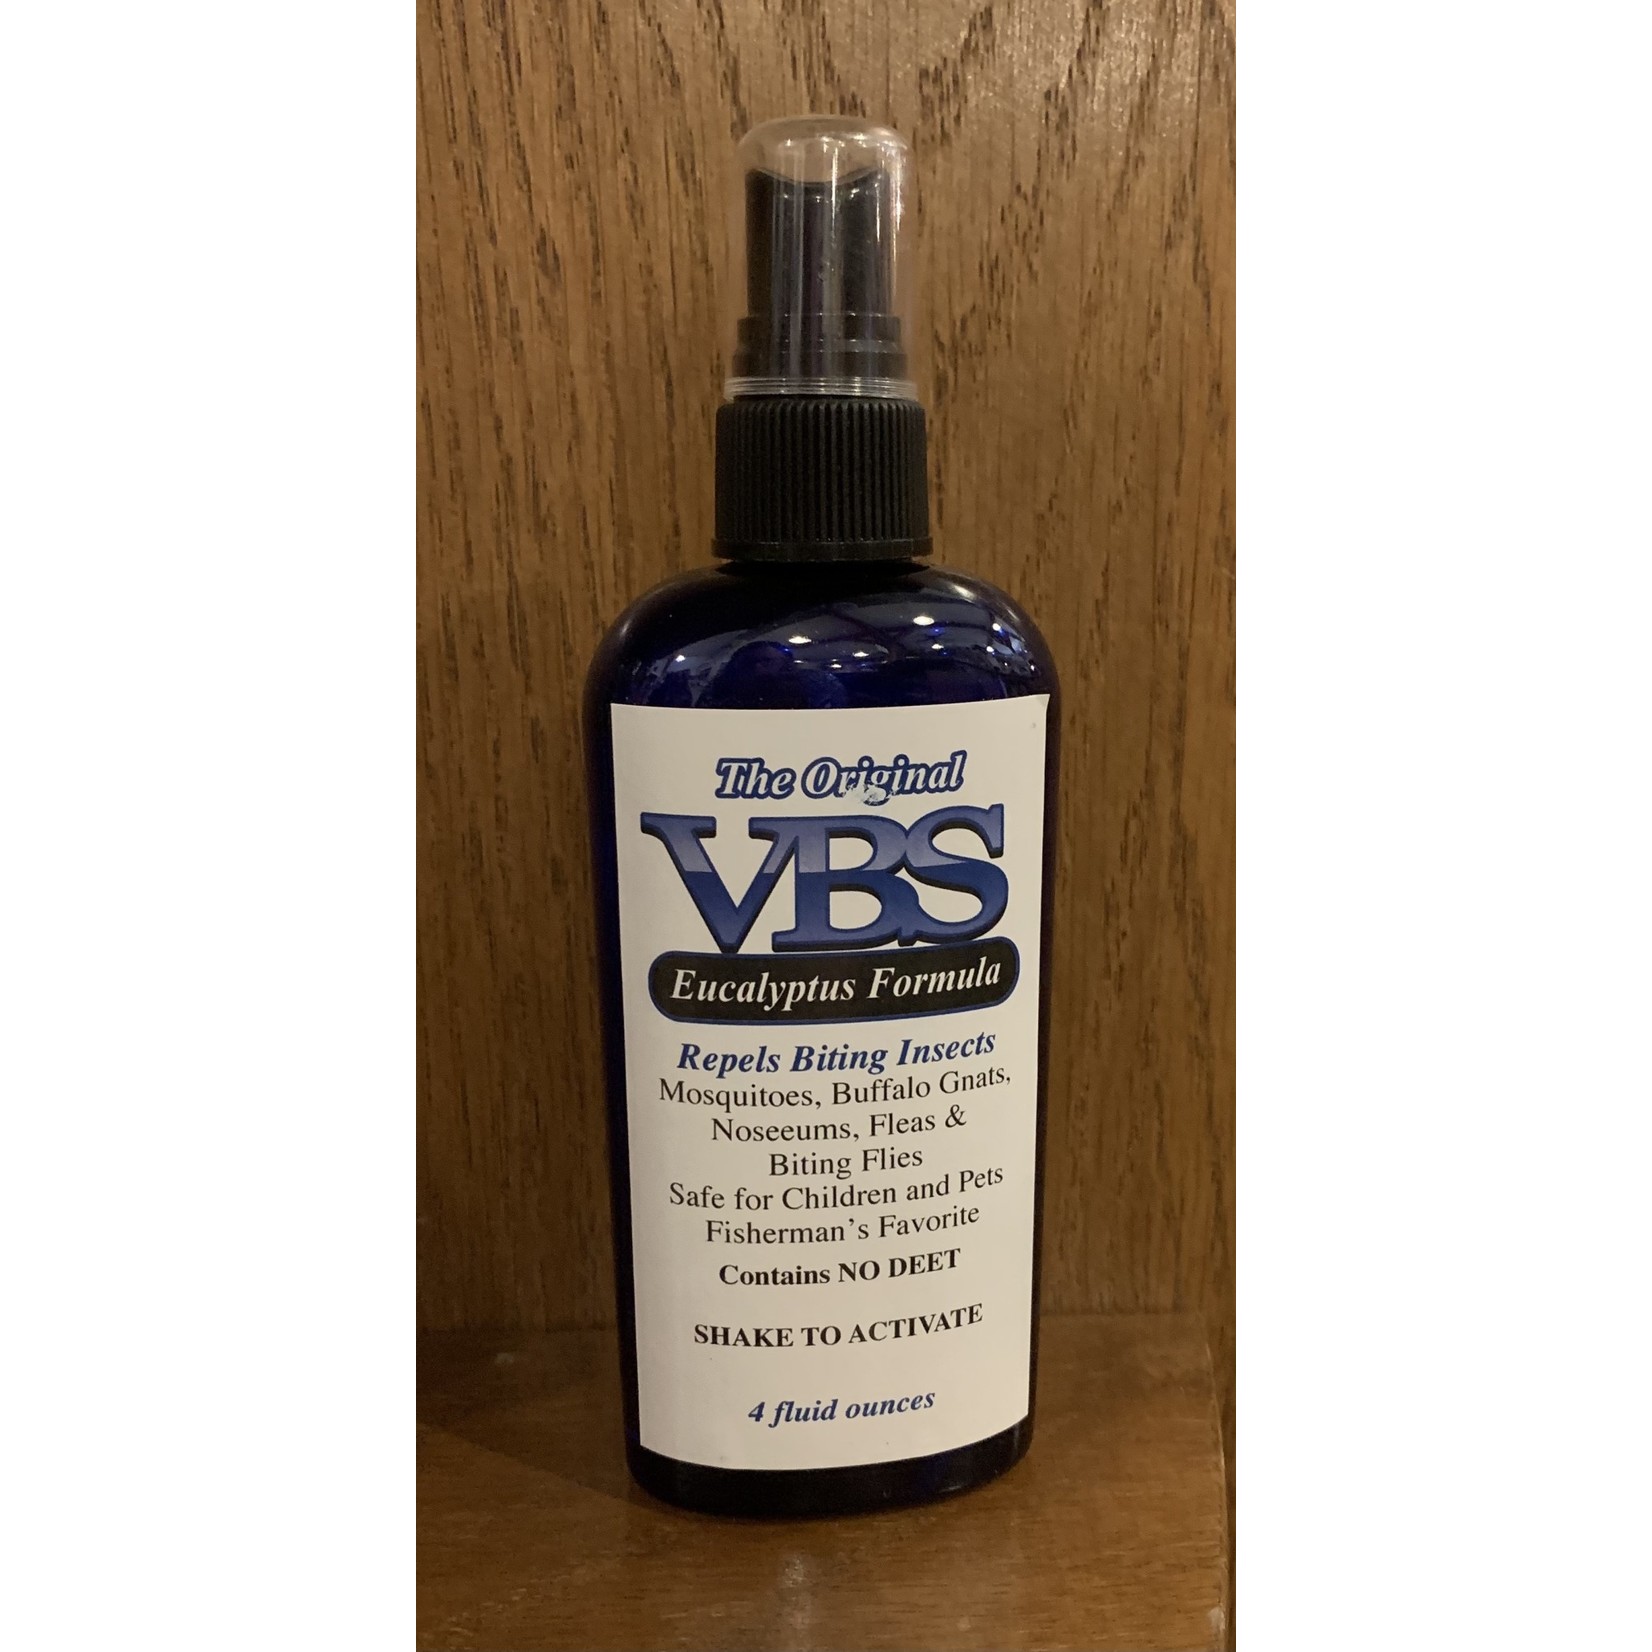 VBS VBS Bug Spray